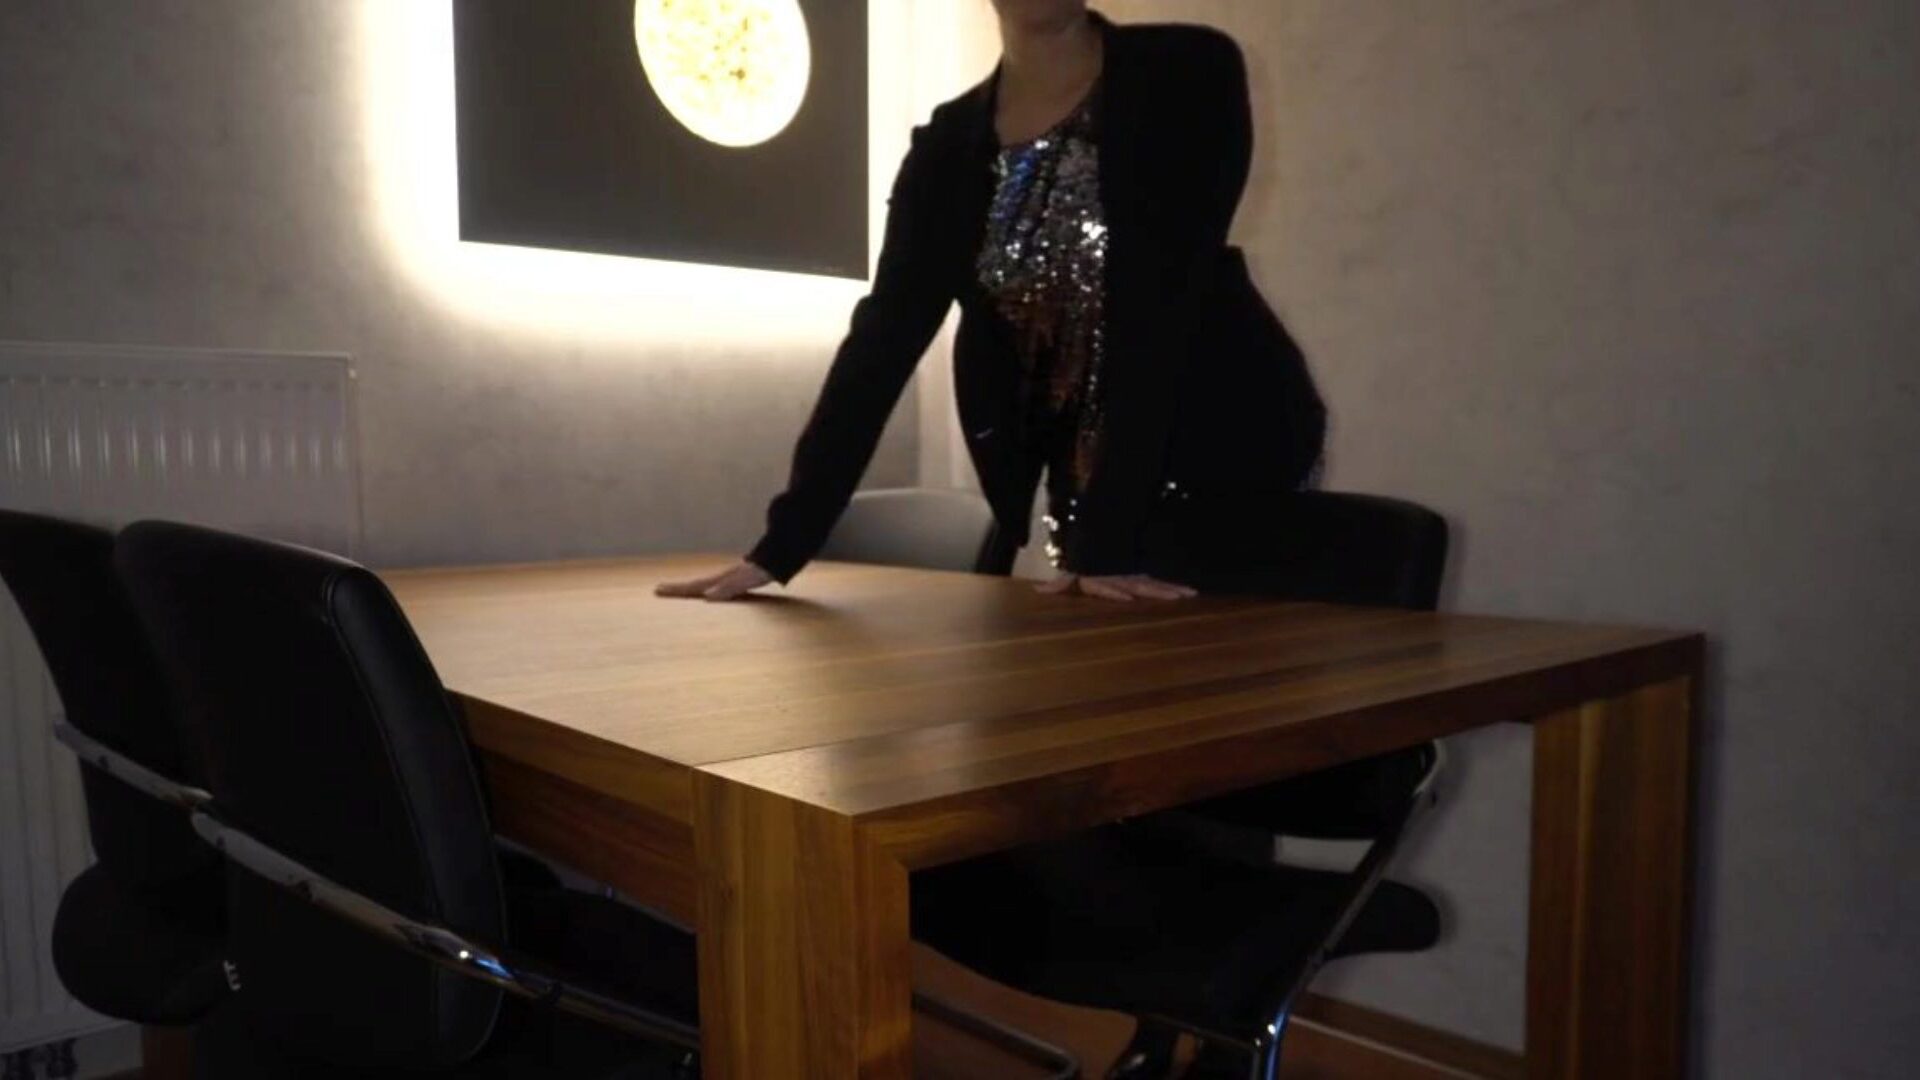 főnök baszik titkárnő análisan az asztalon ... nézni főnök baszik titkárnő análisan az asztalon - üzleti szuka epizód a xhamsteren - a mindenkinek ingyenes dán menyecske hd pornó tube videók